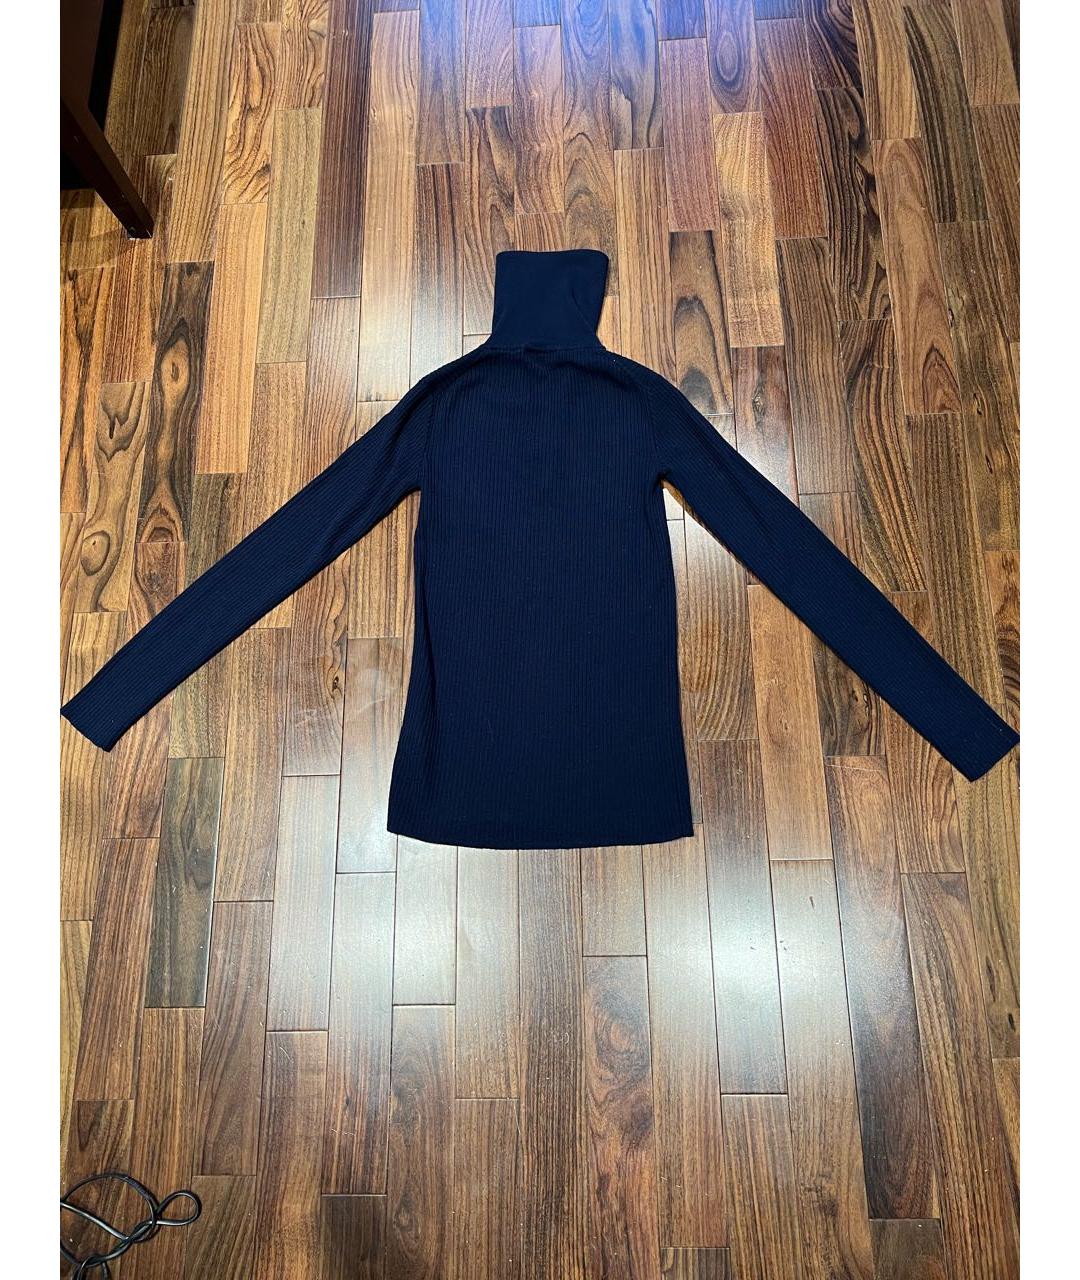 JIL SANDER Темно-синий шерстяной джемпер / свитер, фото 2